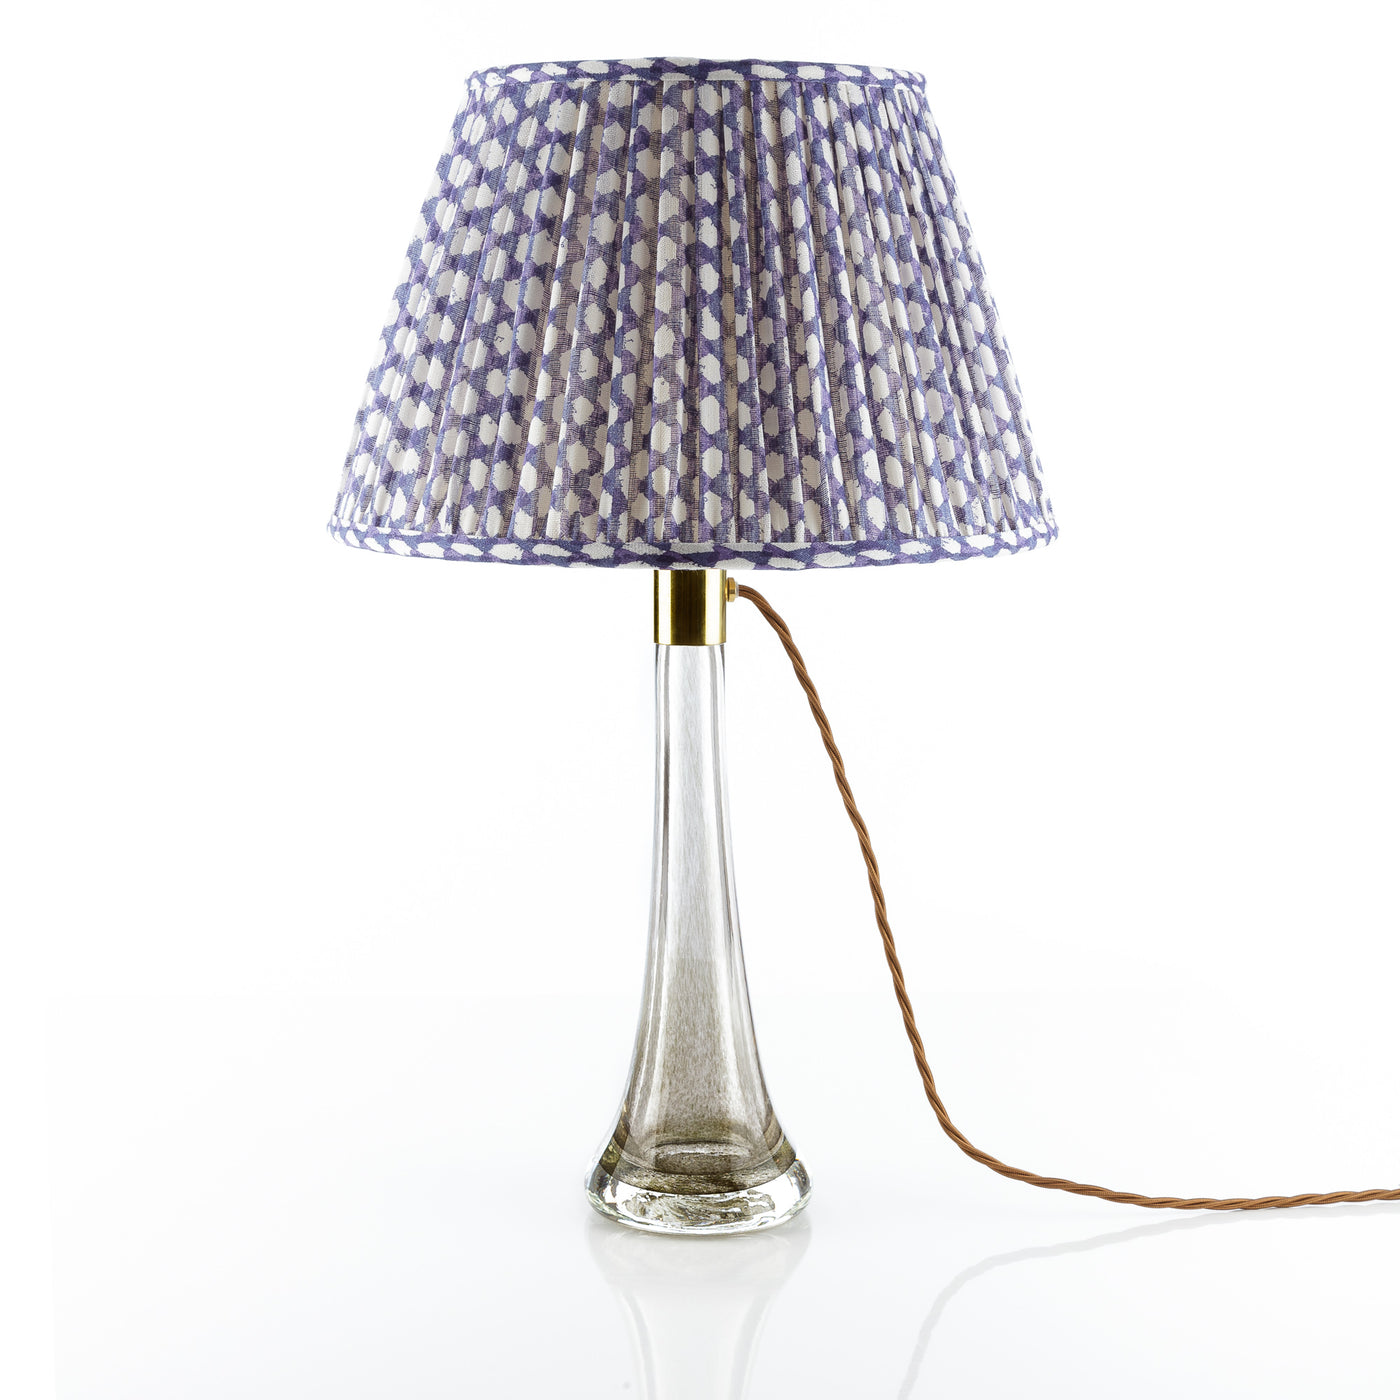 Fermoie Lampshade - Wicker in Indigo  | Newport Lamp And Shade | Located in Newport, RI